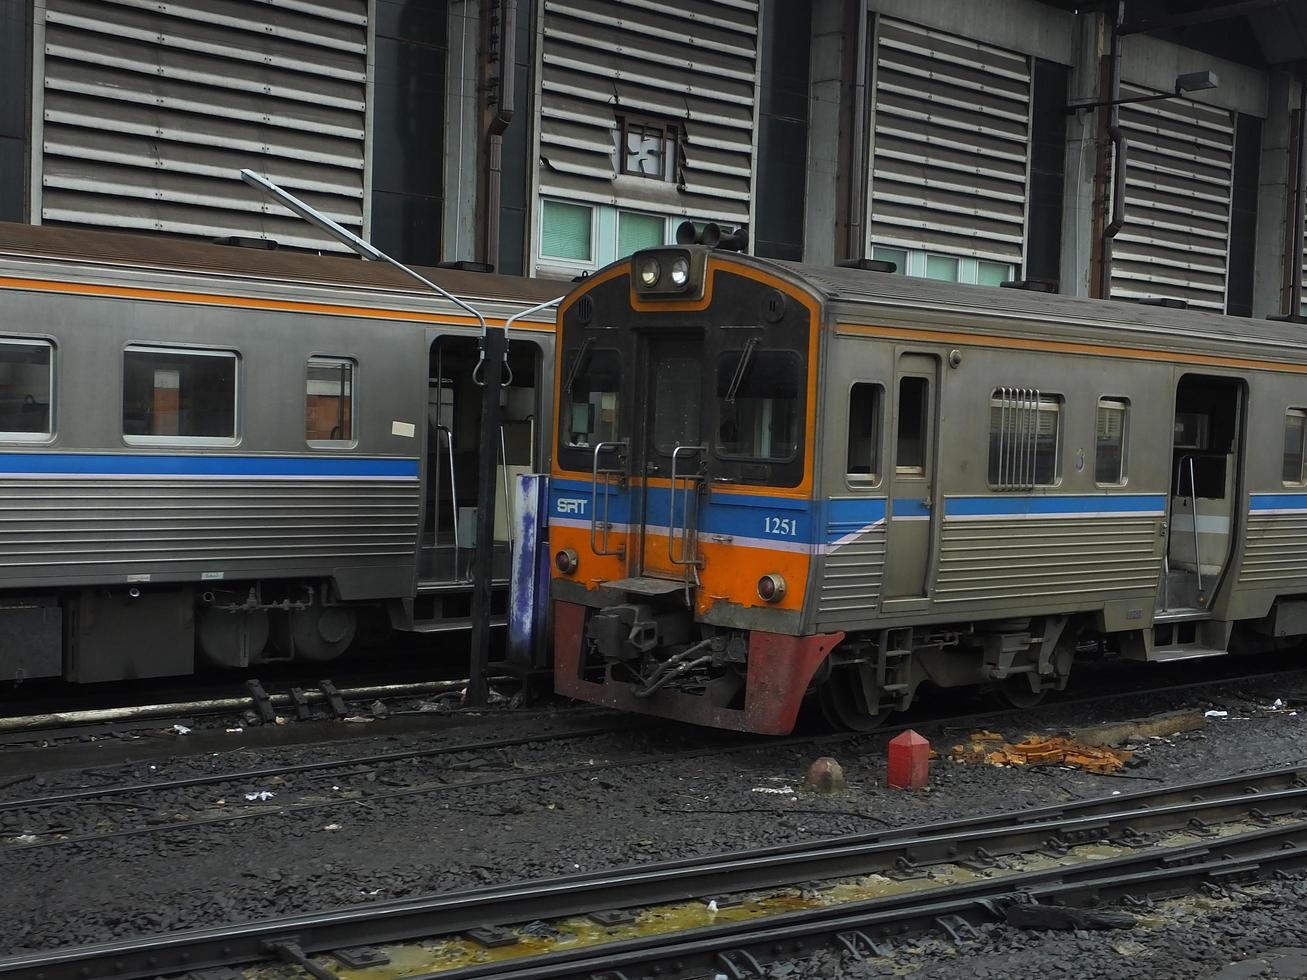 bangkok thailand08 giugno 2019la locomotiva e il treno tailandese sono parcheggiati nel garage delle ferrovie statali della tailandia alla stazione ferroviaria di hua lamphong. foto